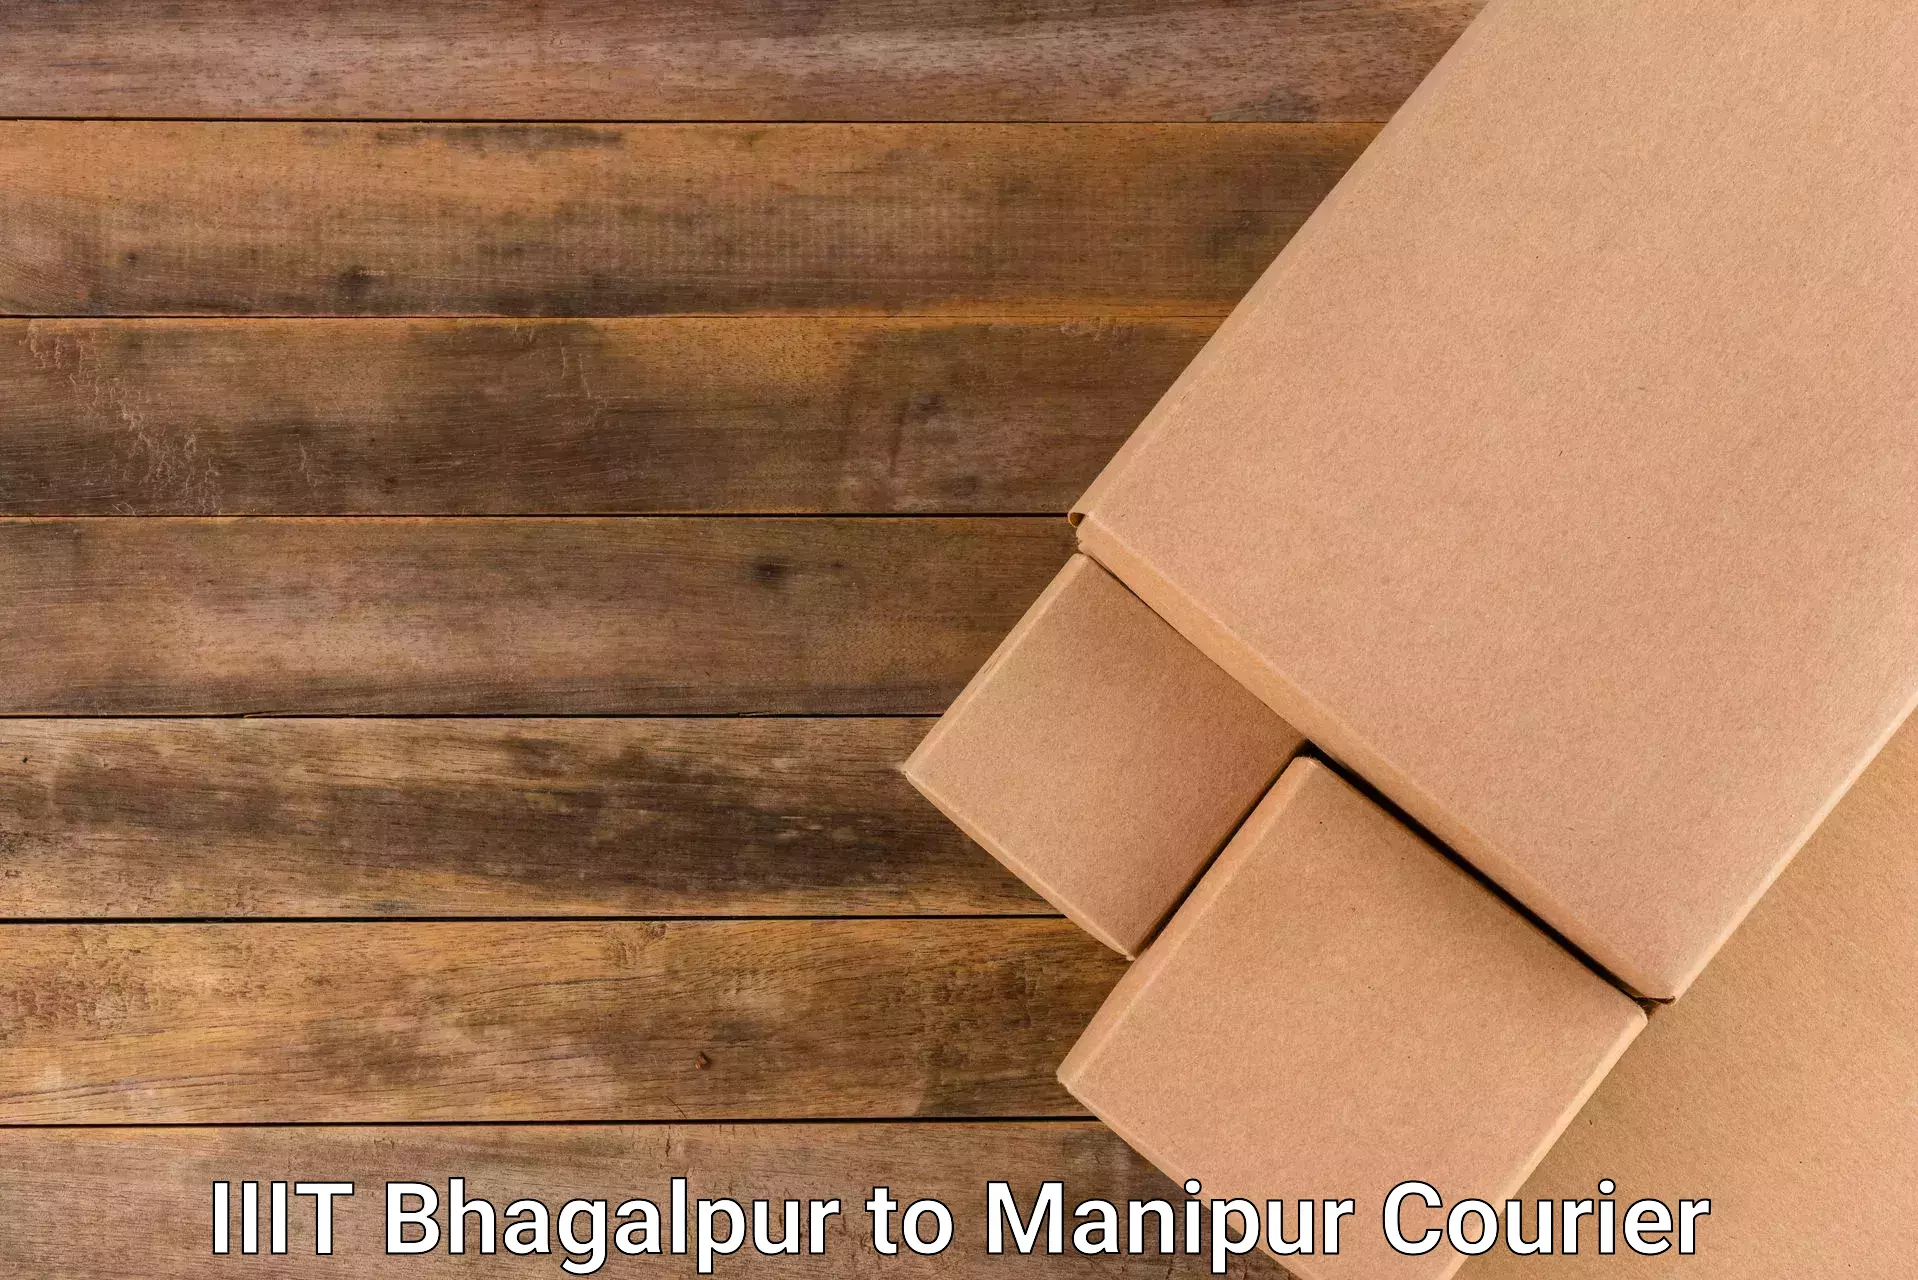 Heavy parcel delivery IIIT Bhagalpur to Churachandpur